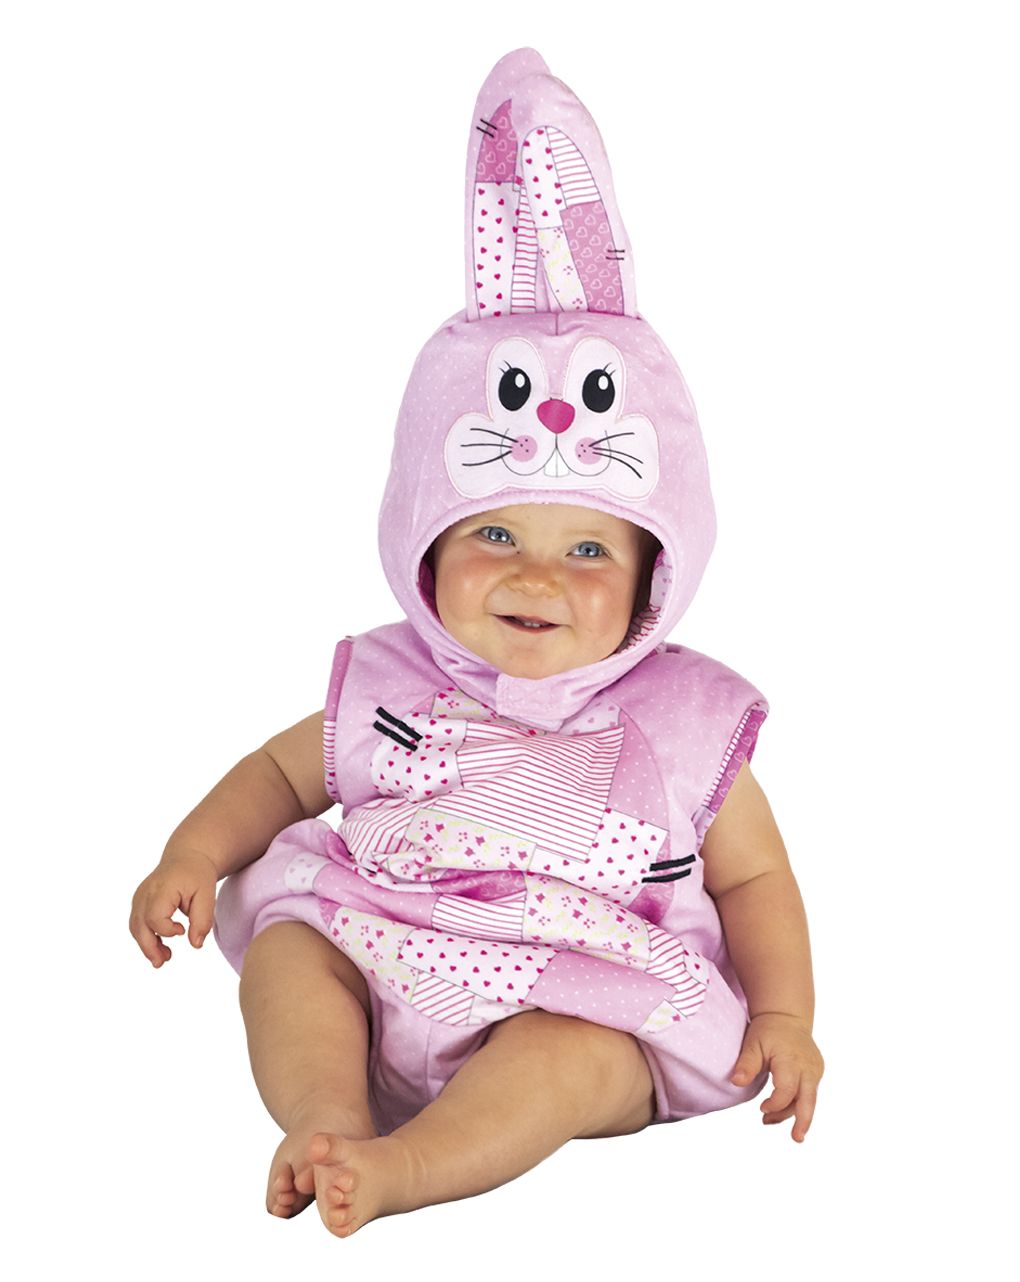 Costume coniglietta baby 6-12 mesi - carnaval queen - Carnaval Queen